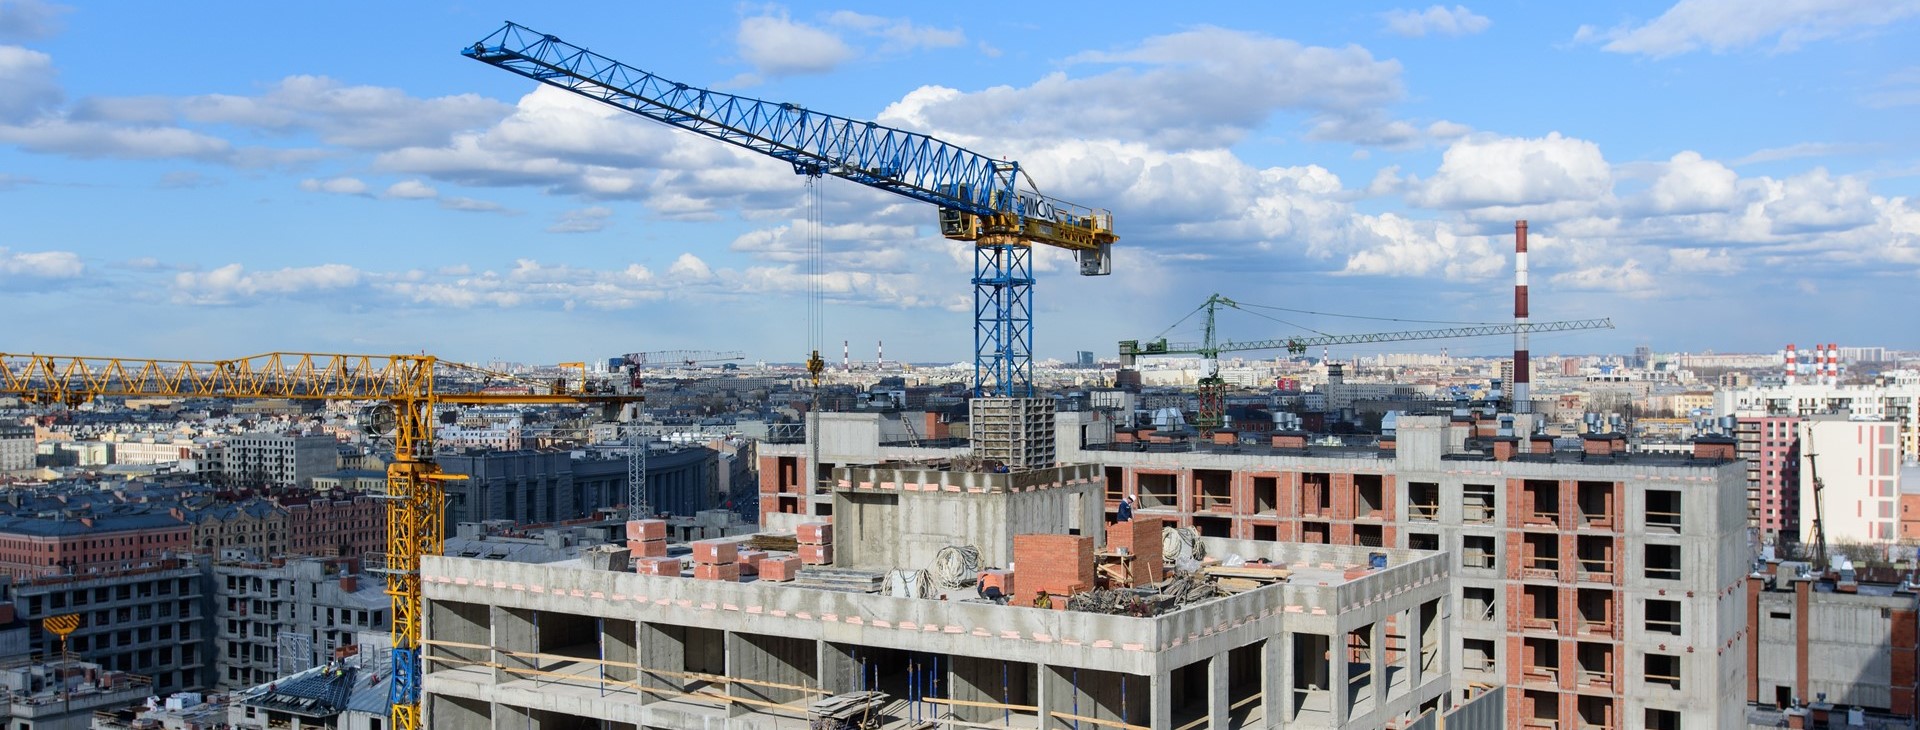 Территории роста: какое будущее строят в Петербурге